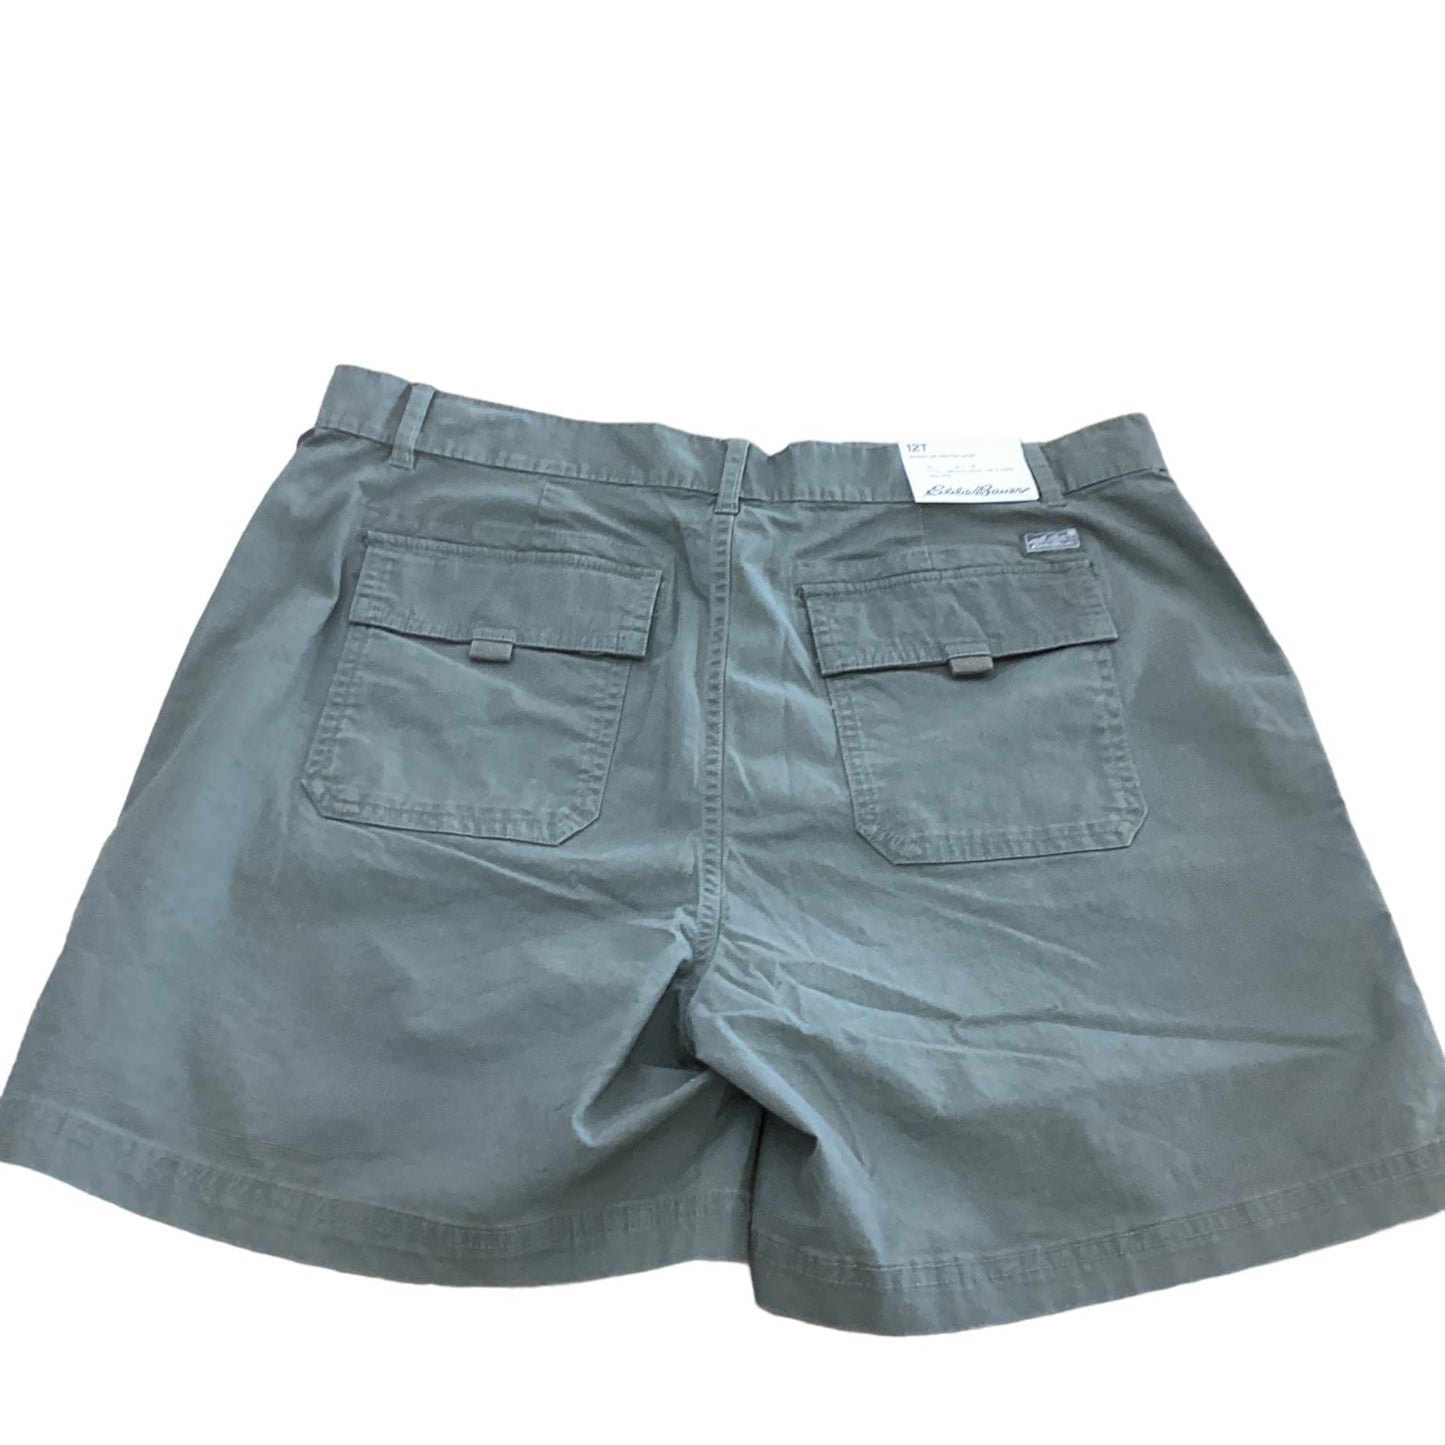 Green Shorts Eddie Bauer, Size 12